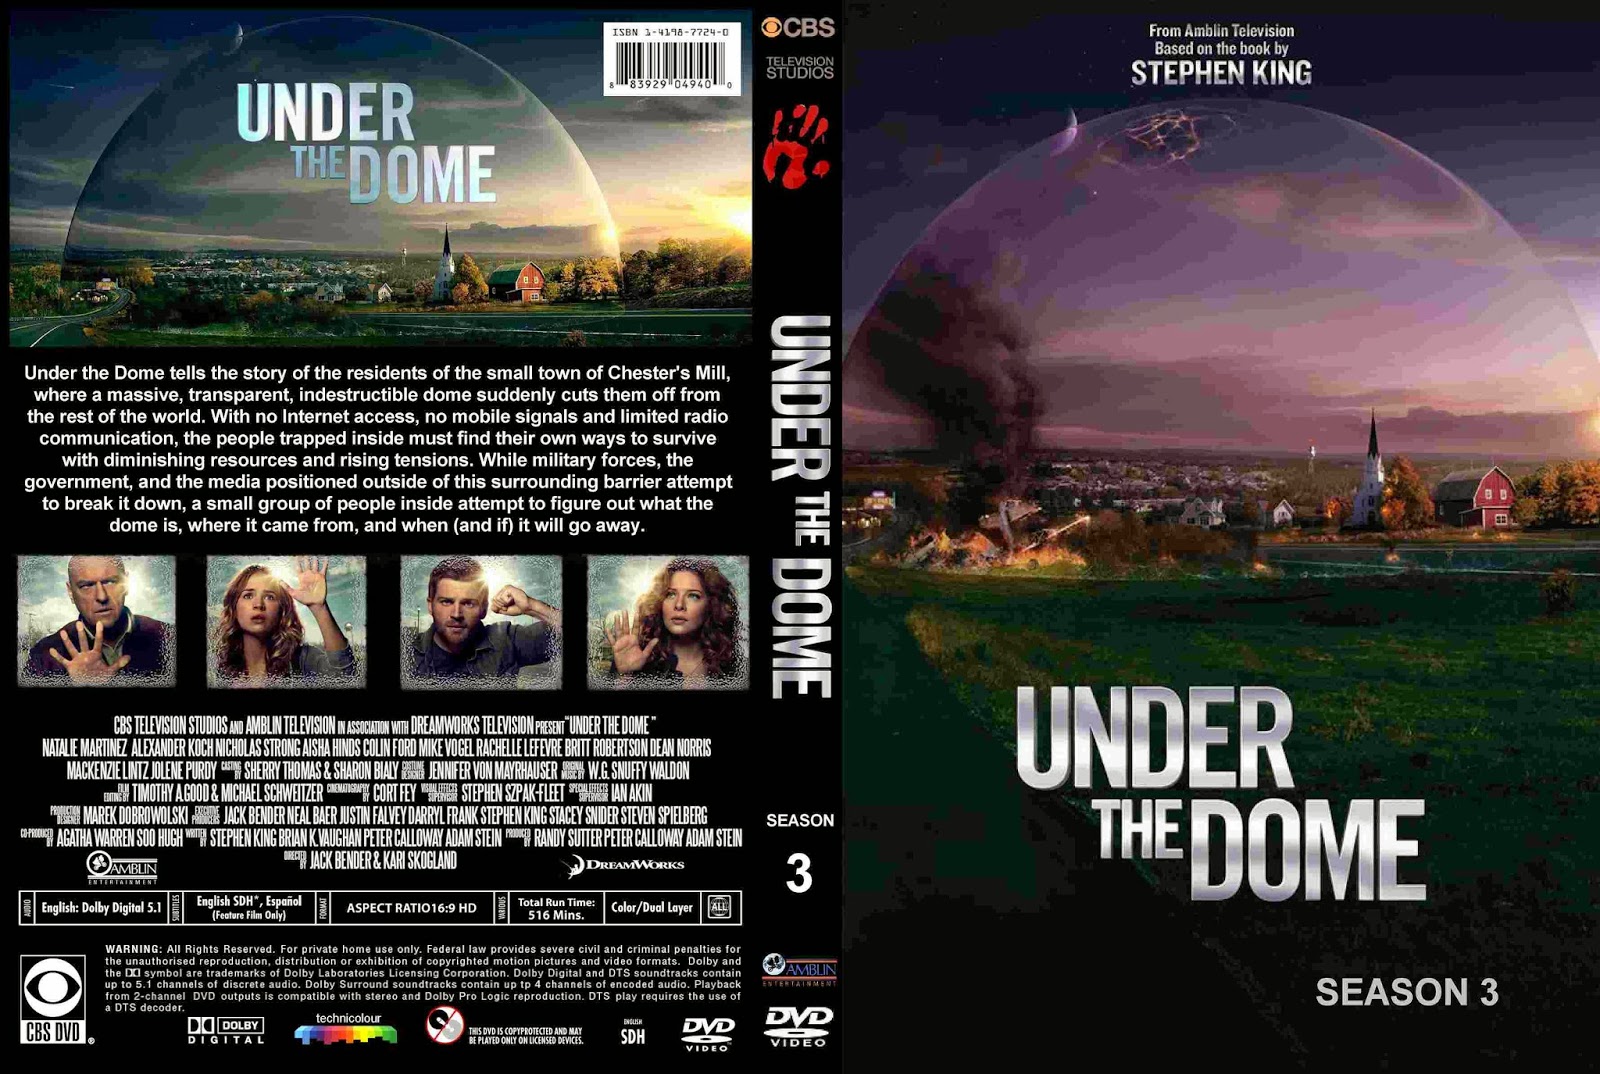 Under The Dome Seizoen 3 (2013-2014) - DvD 4 Finale